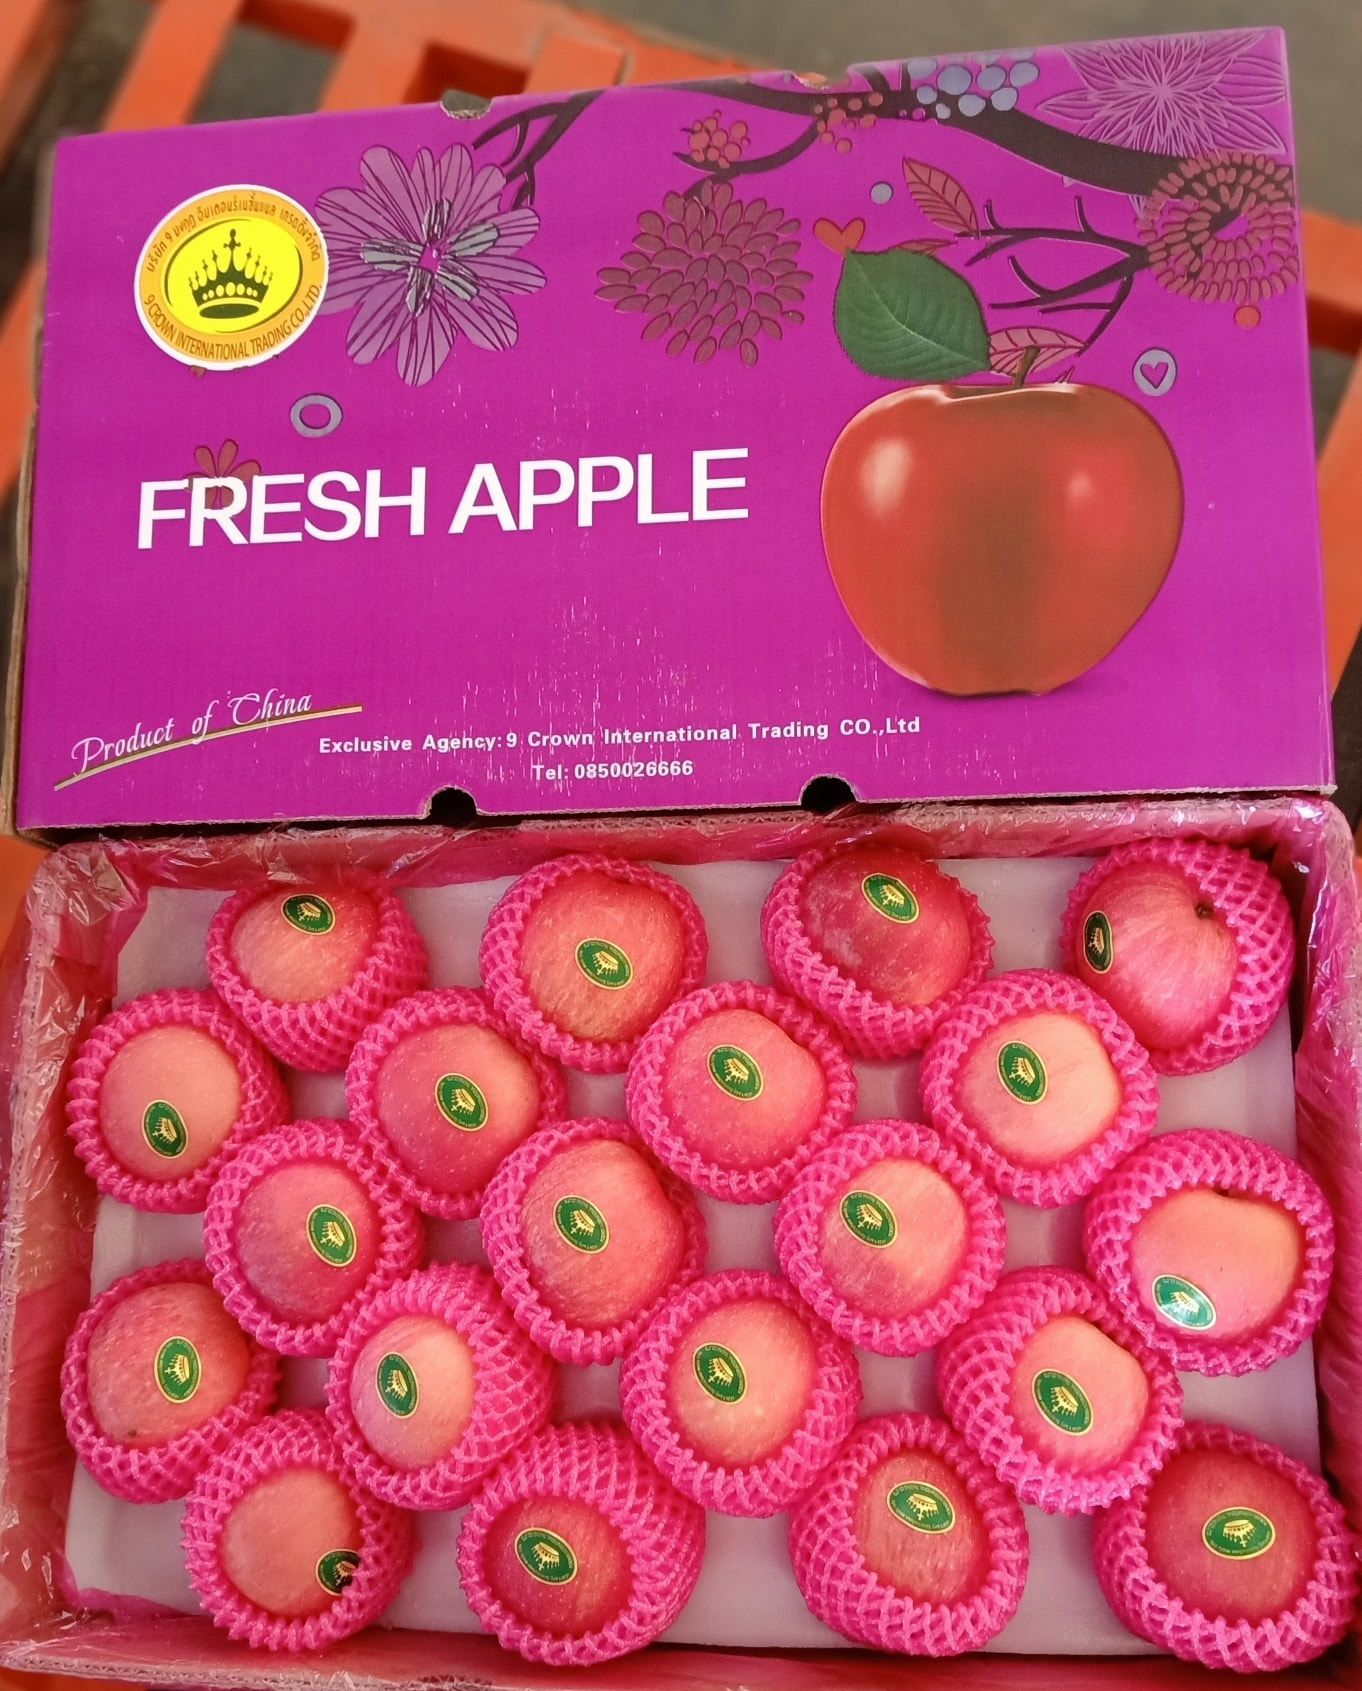 1. แอปเปิลฟูจิ (Fuji Apples) กล่องม่วง